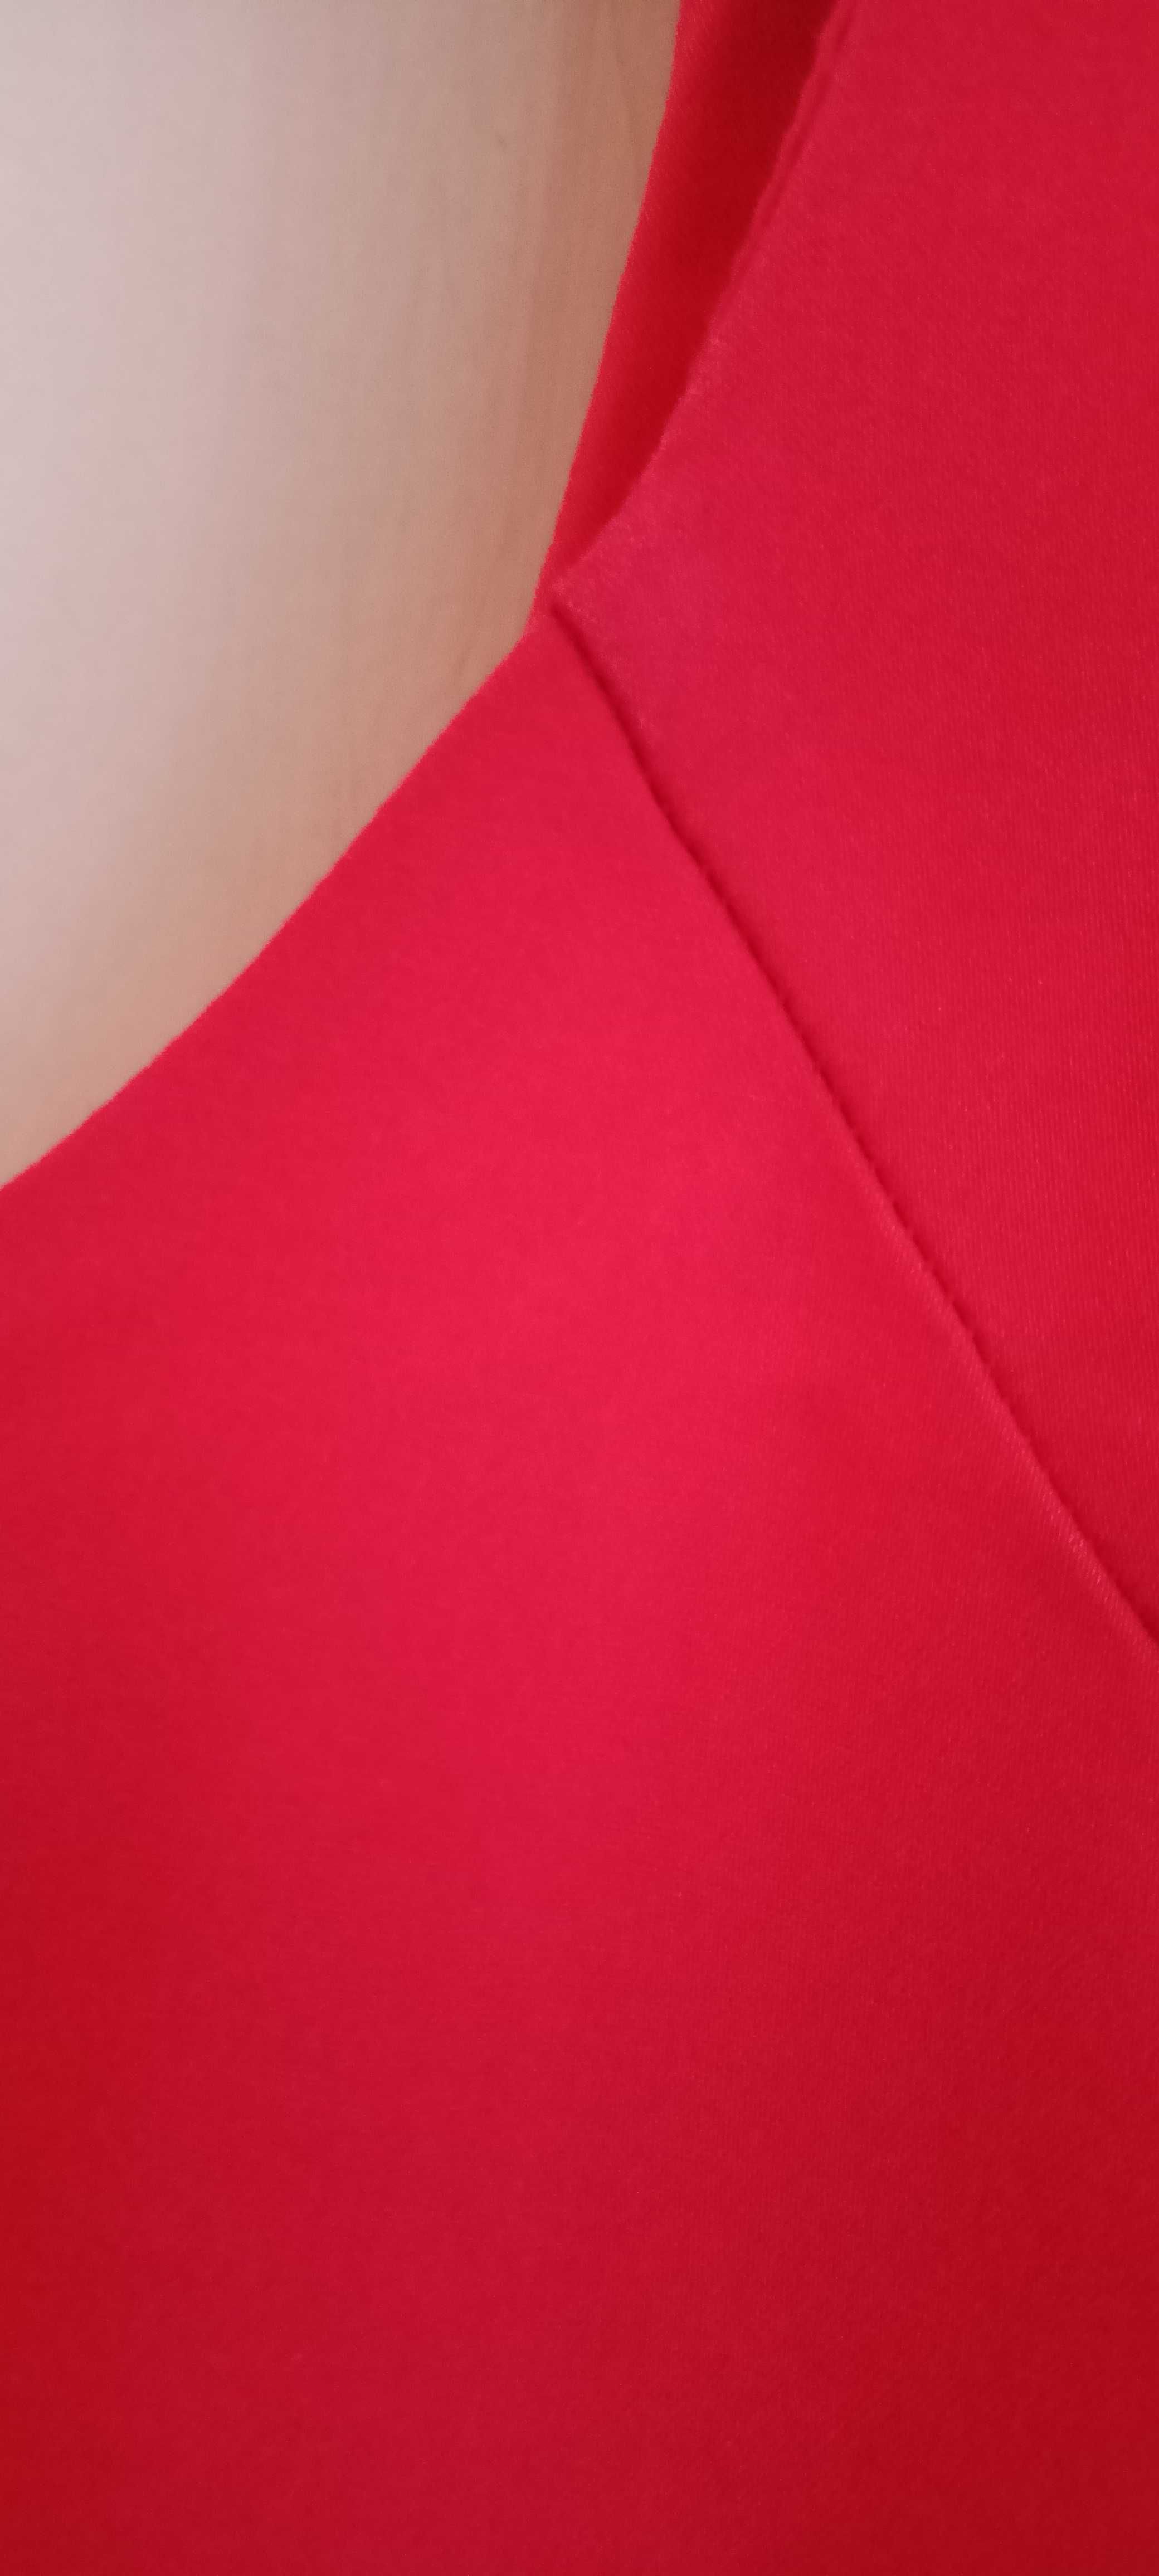 Czerwona sukienka Reserved rozmiar 40